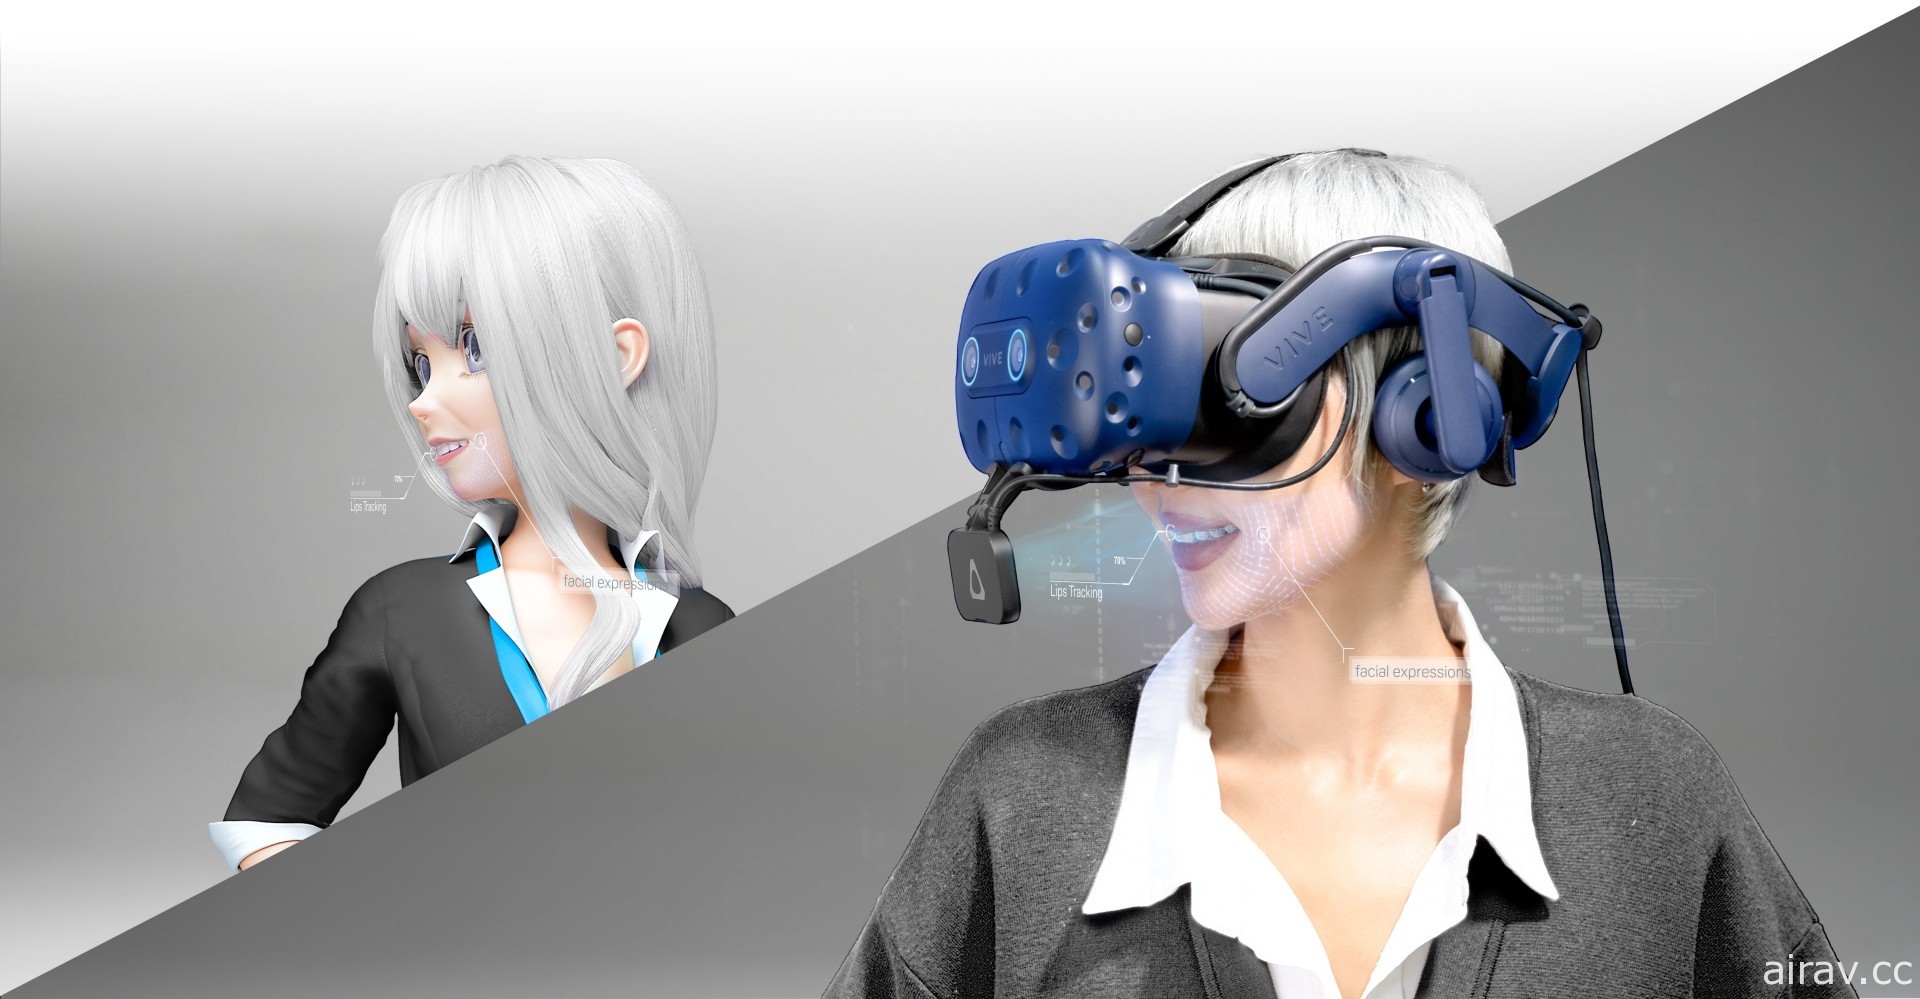 新一代「VIVE 移動定位器」及「表情偵測套件」上市 為 VR 人機互動帶來新體驗